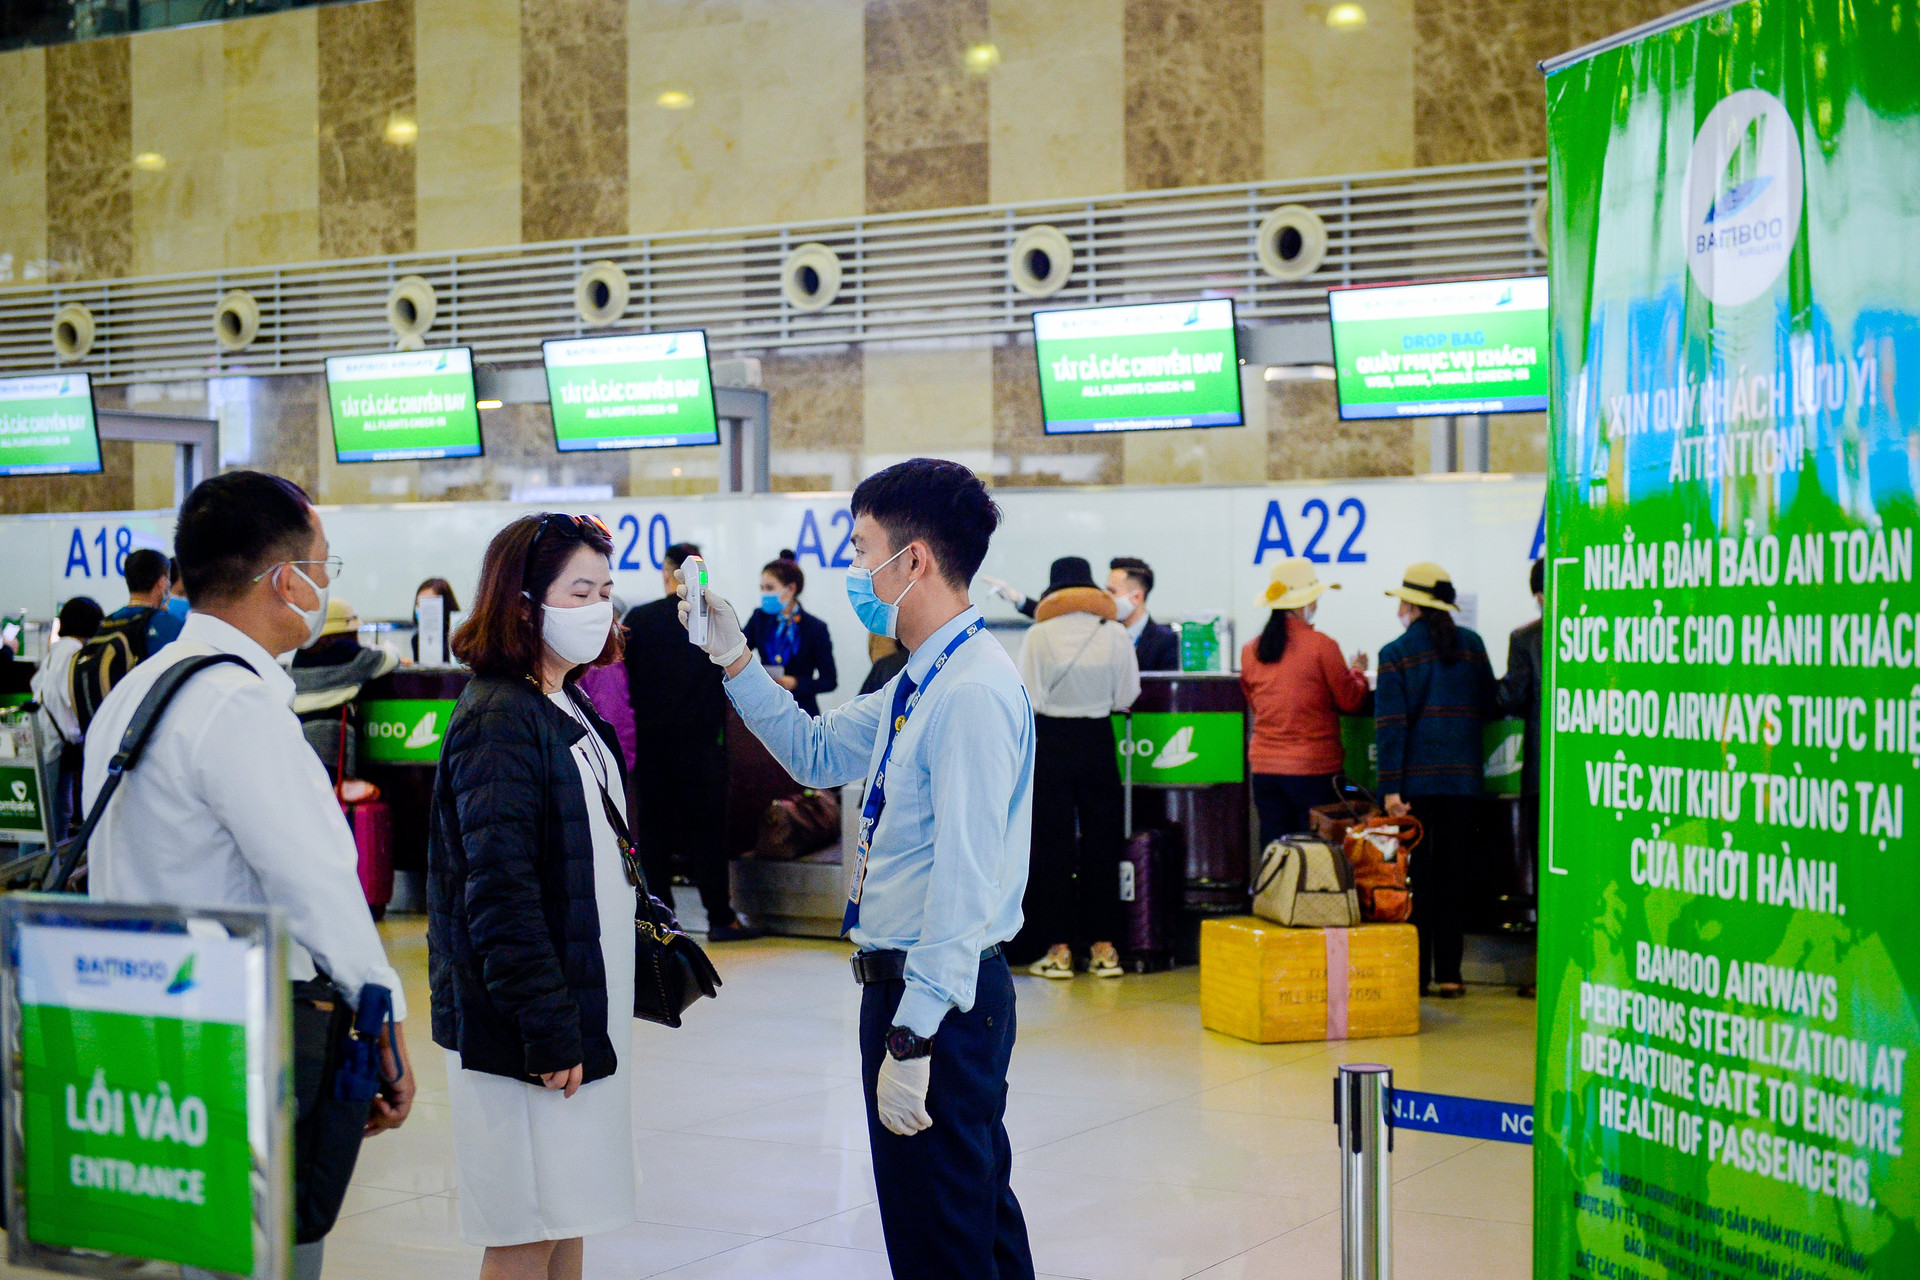 Hưởng lợi từ chính sách phòng dịch của Chính phủ, hành khách đổ xô đi mua vé bay ngày giáp Tết